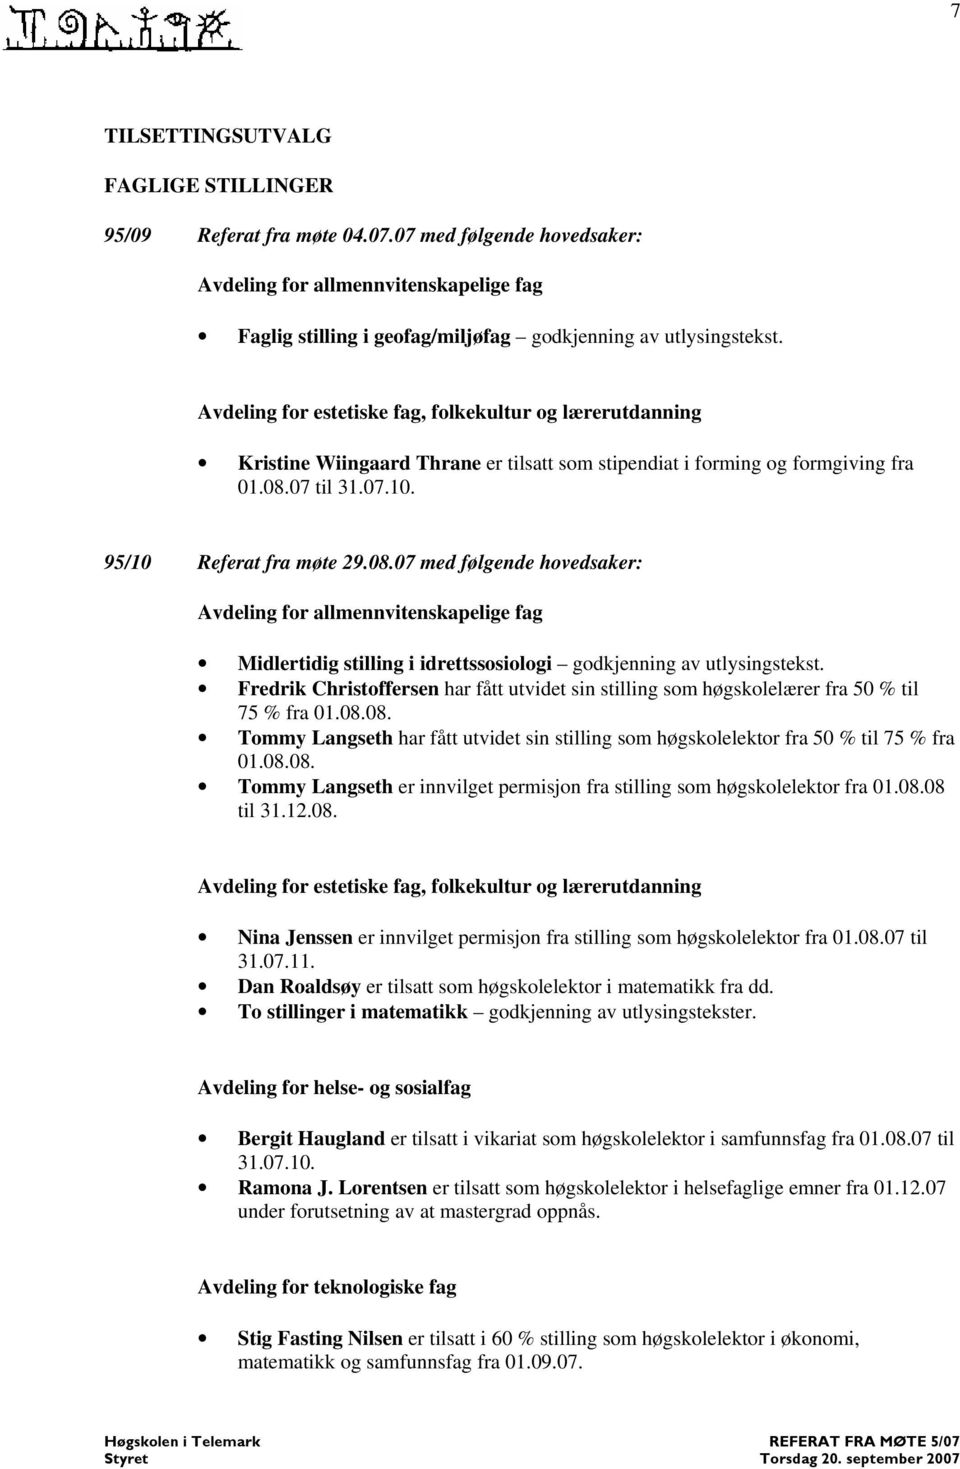 07 til 31.07.10. 95/10 Referat fra møte 29.08.07 med følgende hovedsaker: Avdeling for allmennvitenskapelige fag Midlertidig stilling i idrettssosiologi godkjenning av utlysingstekst.